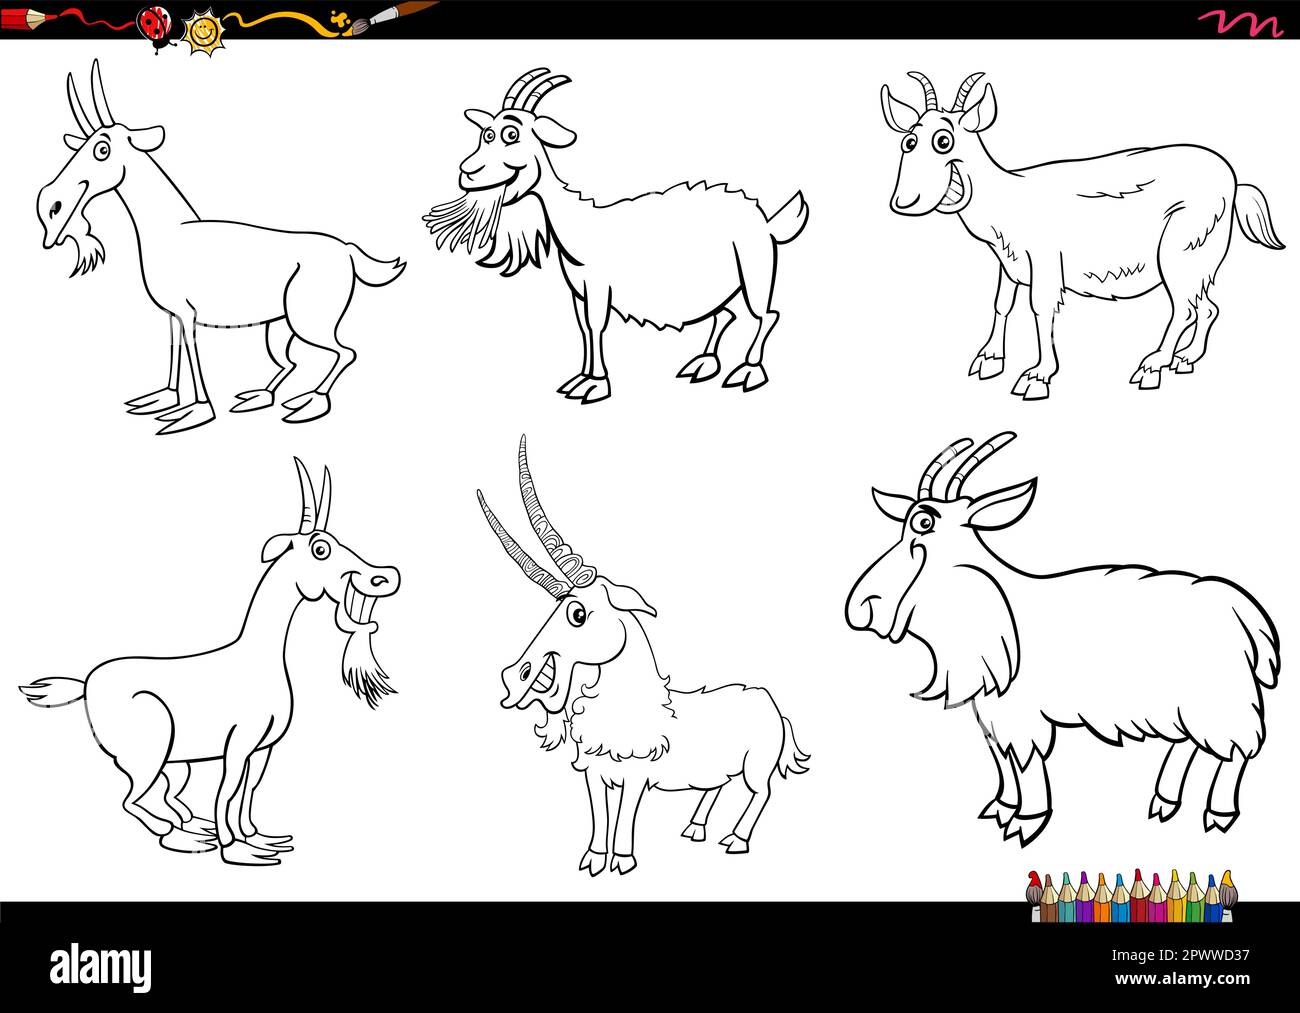 Ilustración de dibujos animados en blanco y negro de personajes cómicos de animales de granja de cabras establecen página para colorear Ilustración del Vector